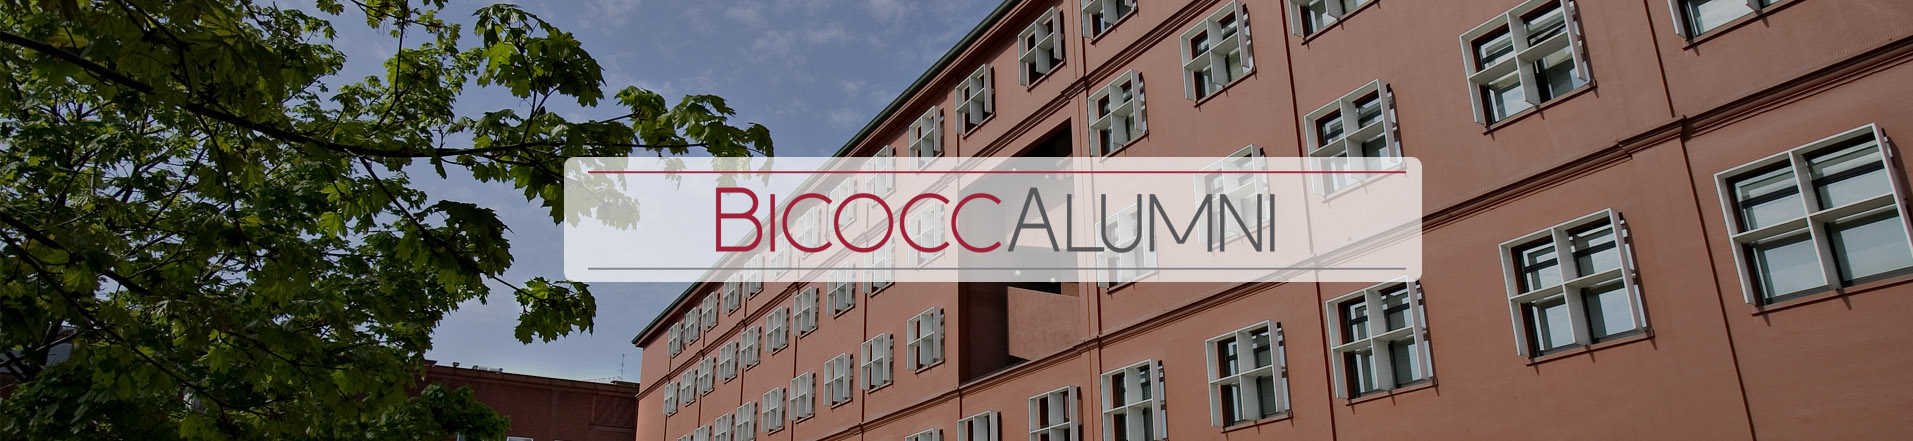 Bicocca Alumni